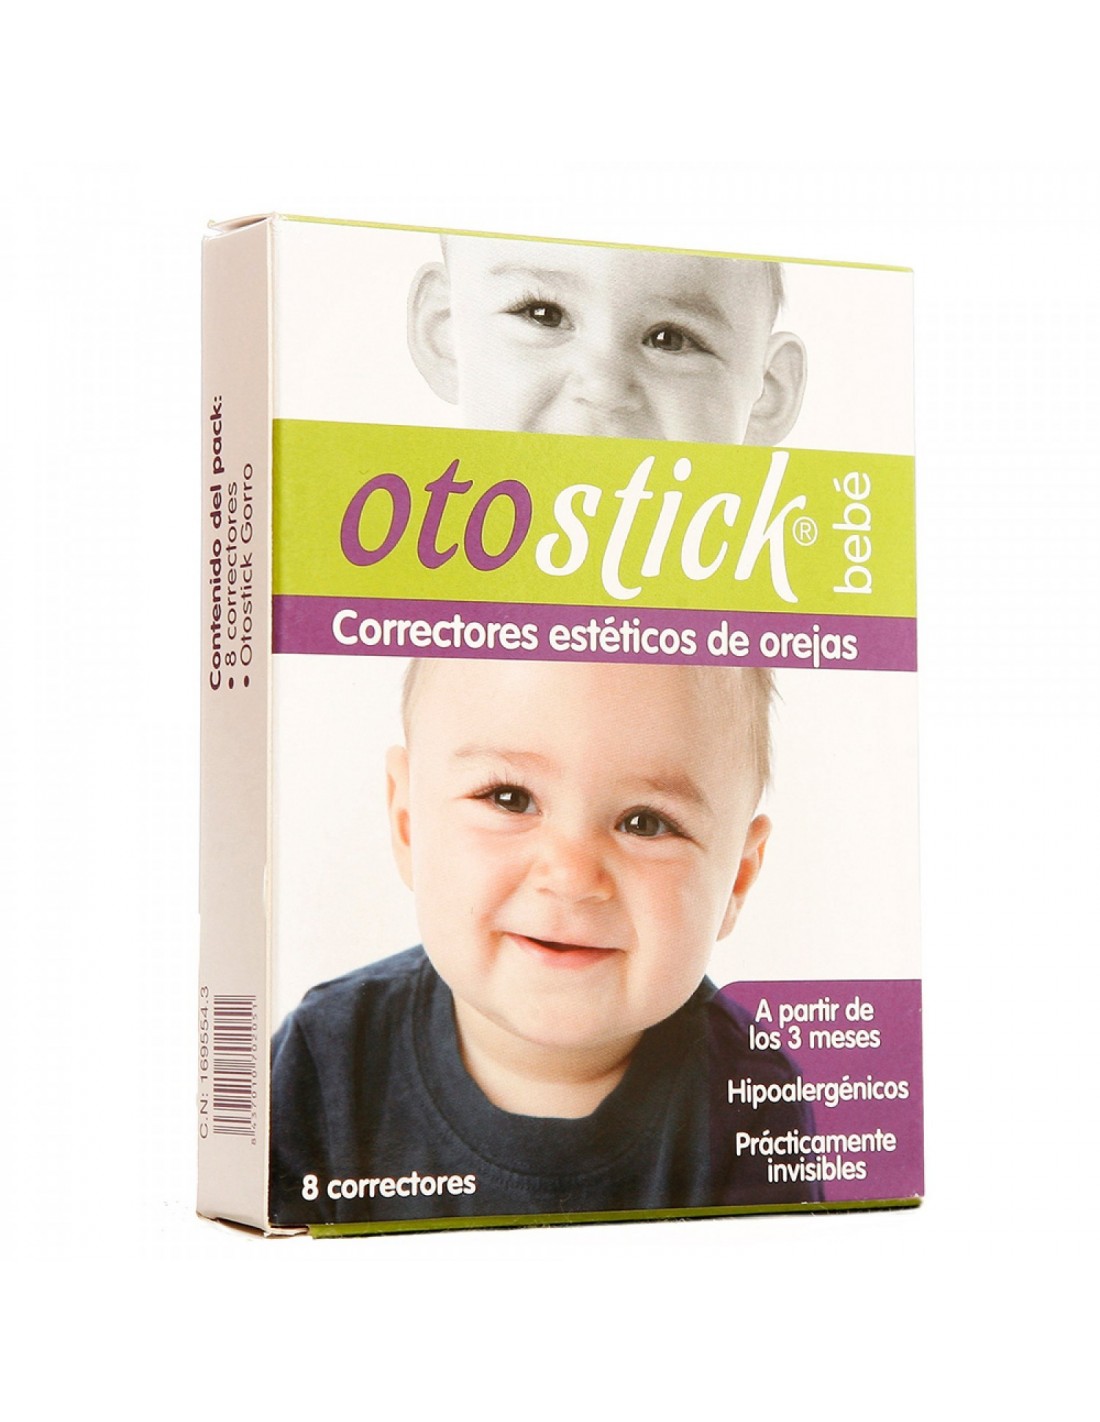  Otostick Baby – 8 unidades discreto corrector de